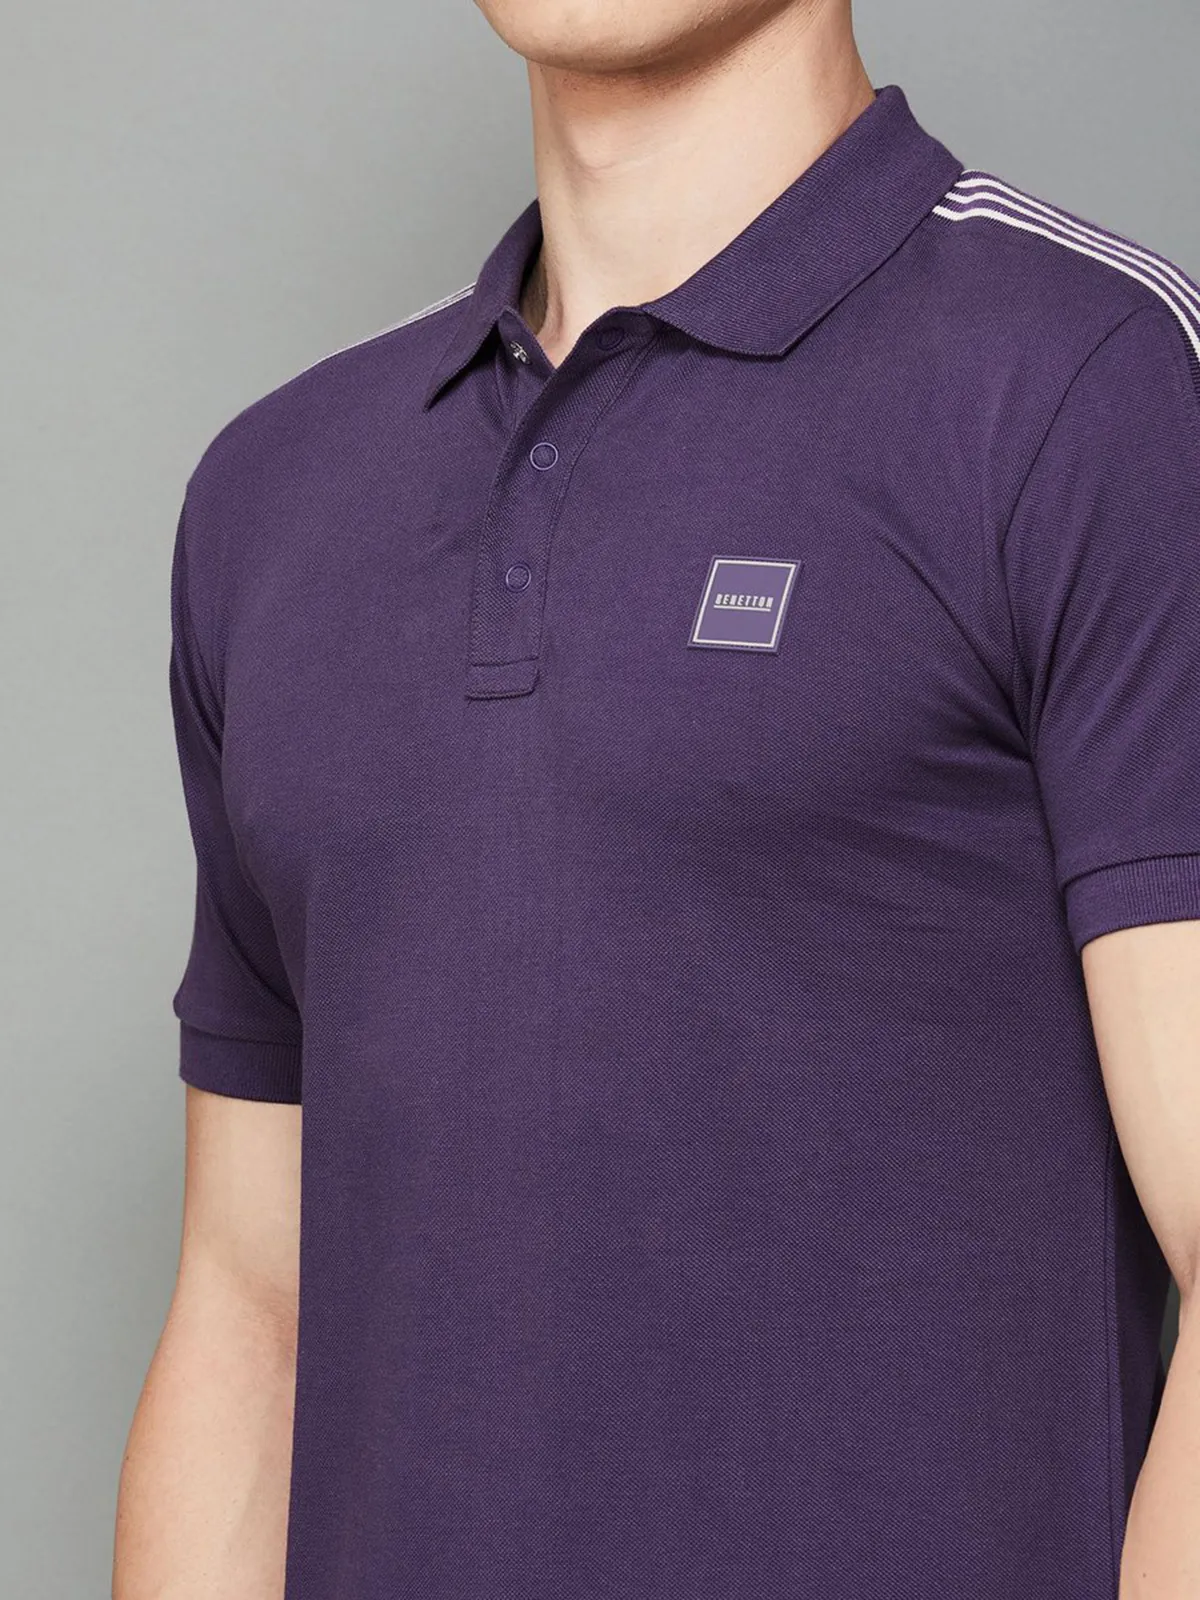 UCB purple cotton plain t-shirt